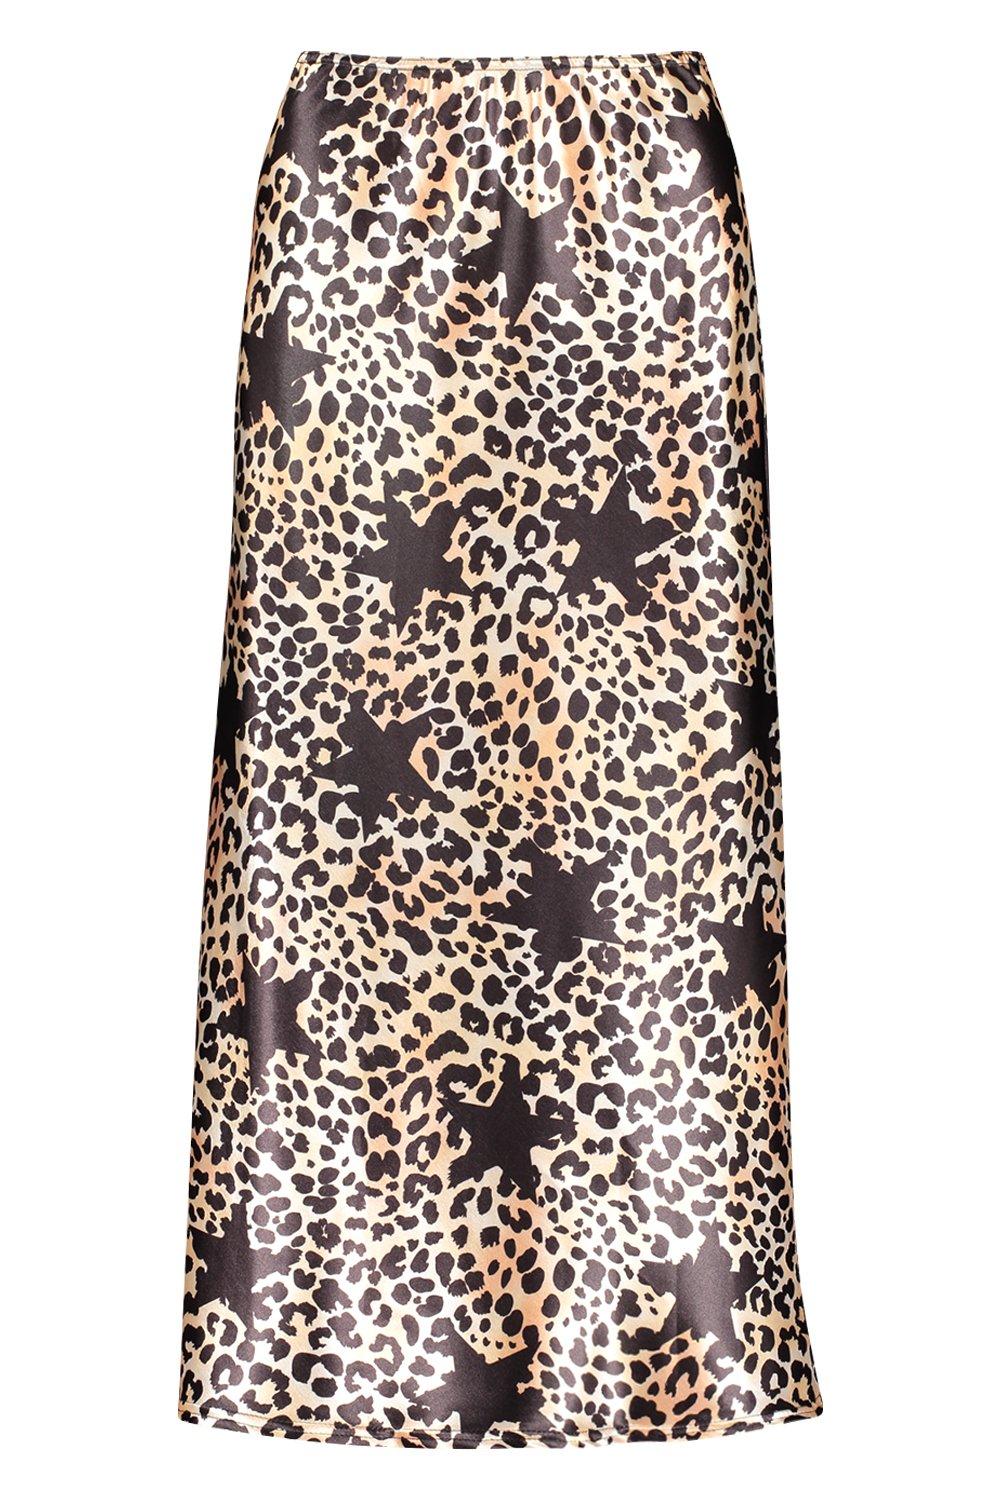 boohoo star leopard print dress